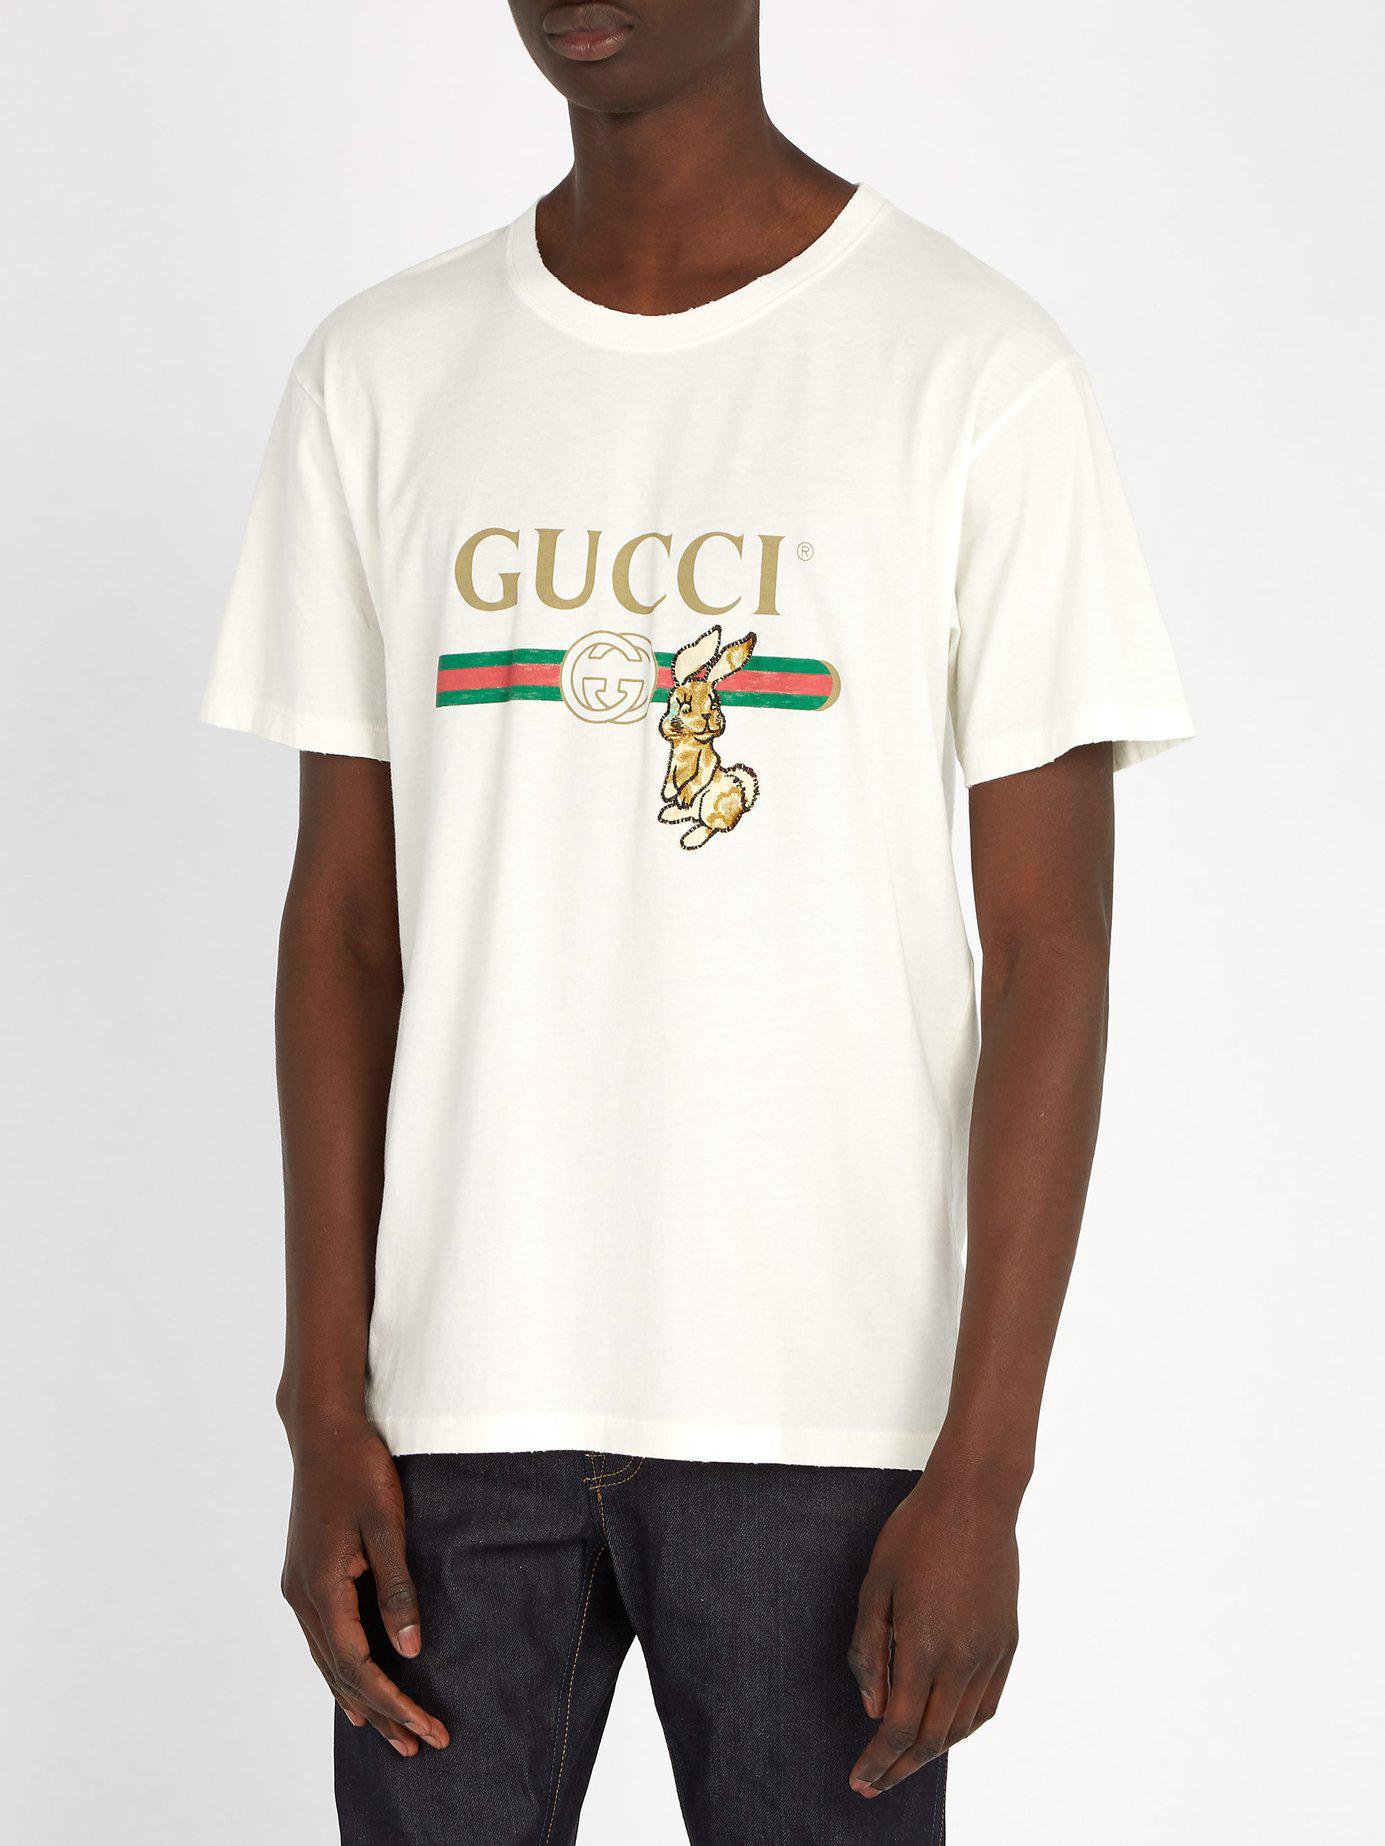 Gucci Cotton Vintage Logo T Shirt With Bunny Appliqué for Men - Lyst